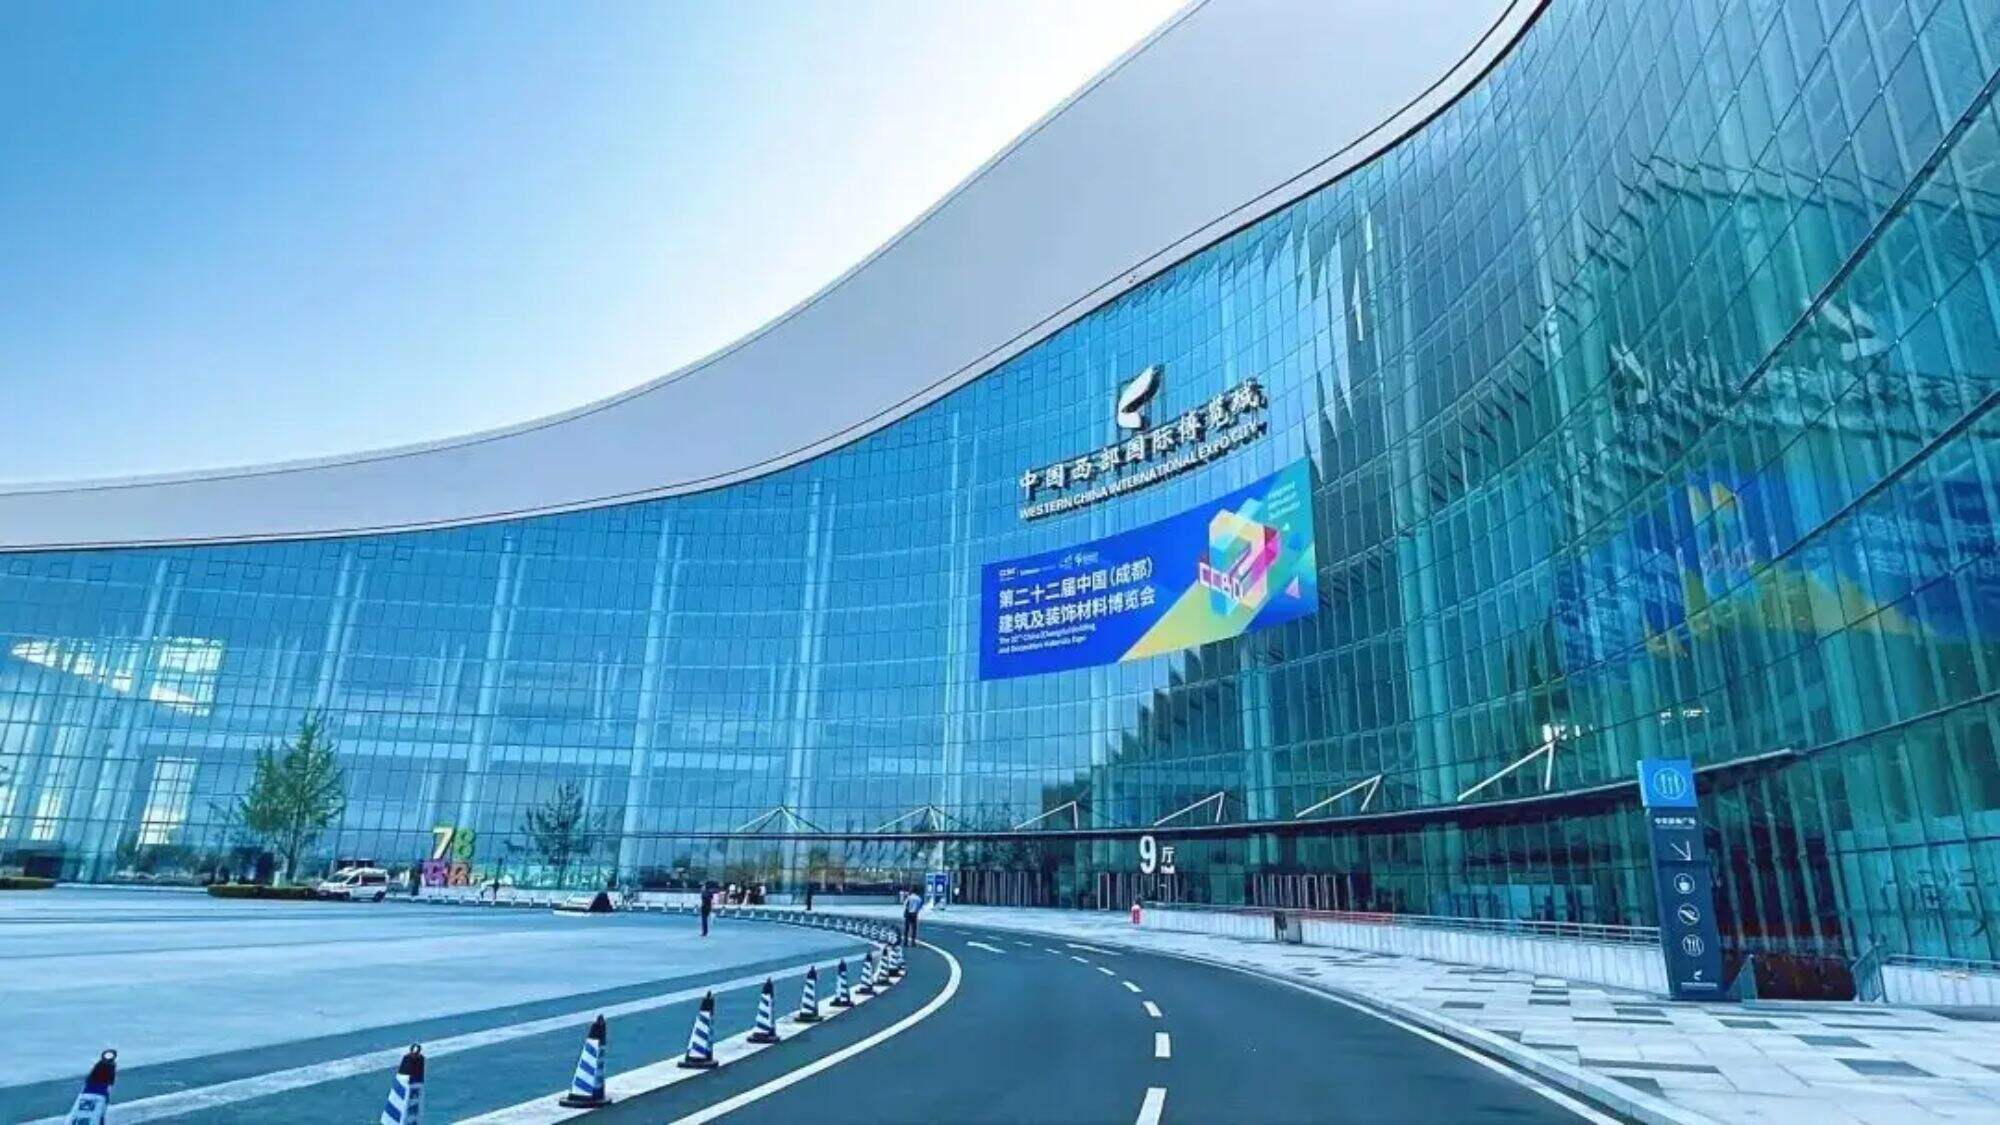 Rendez-vous directement sur le site de Chengdu Construction Expo ! Le hall d'exposition DuPont Hardware est très populaire !